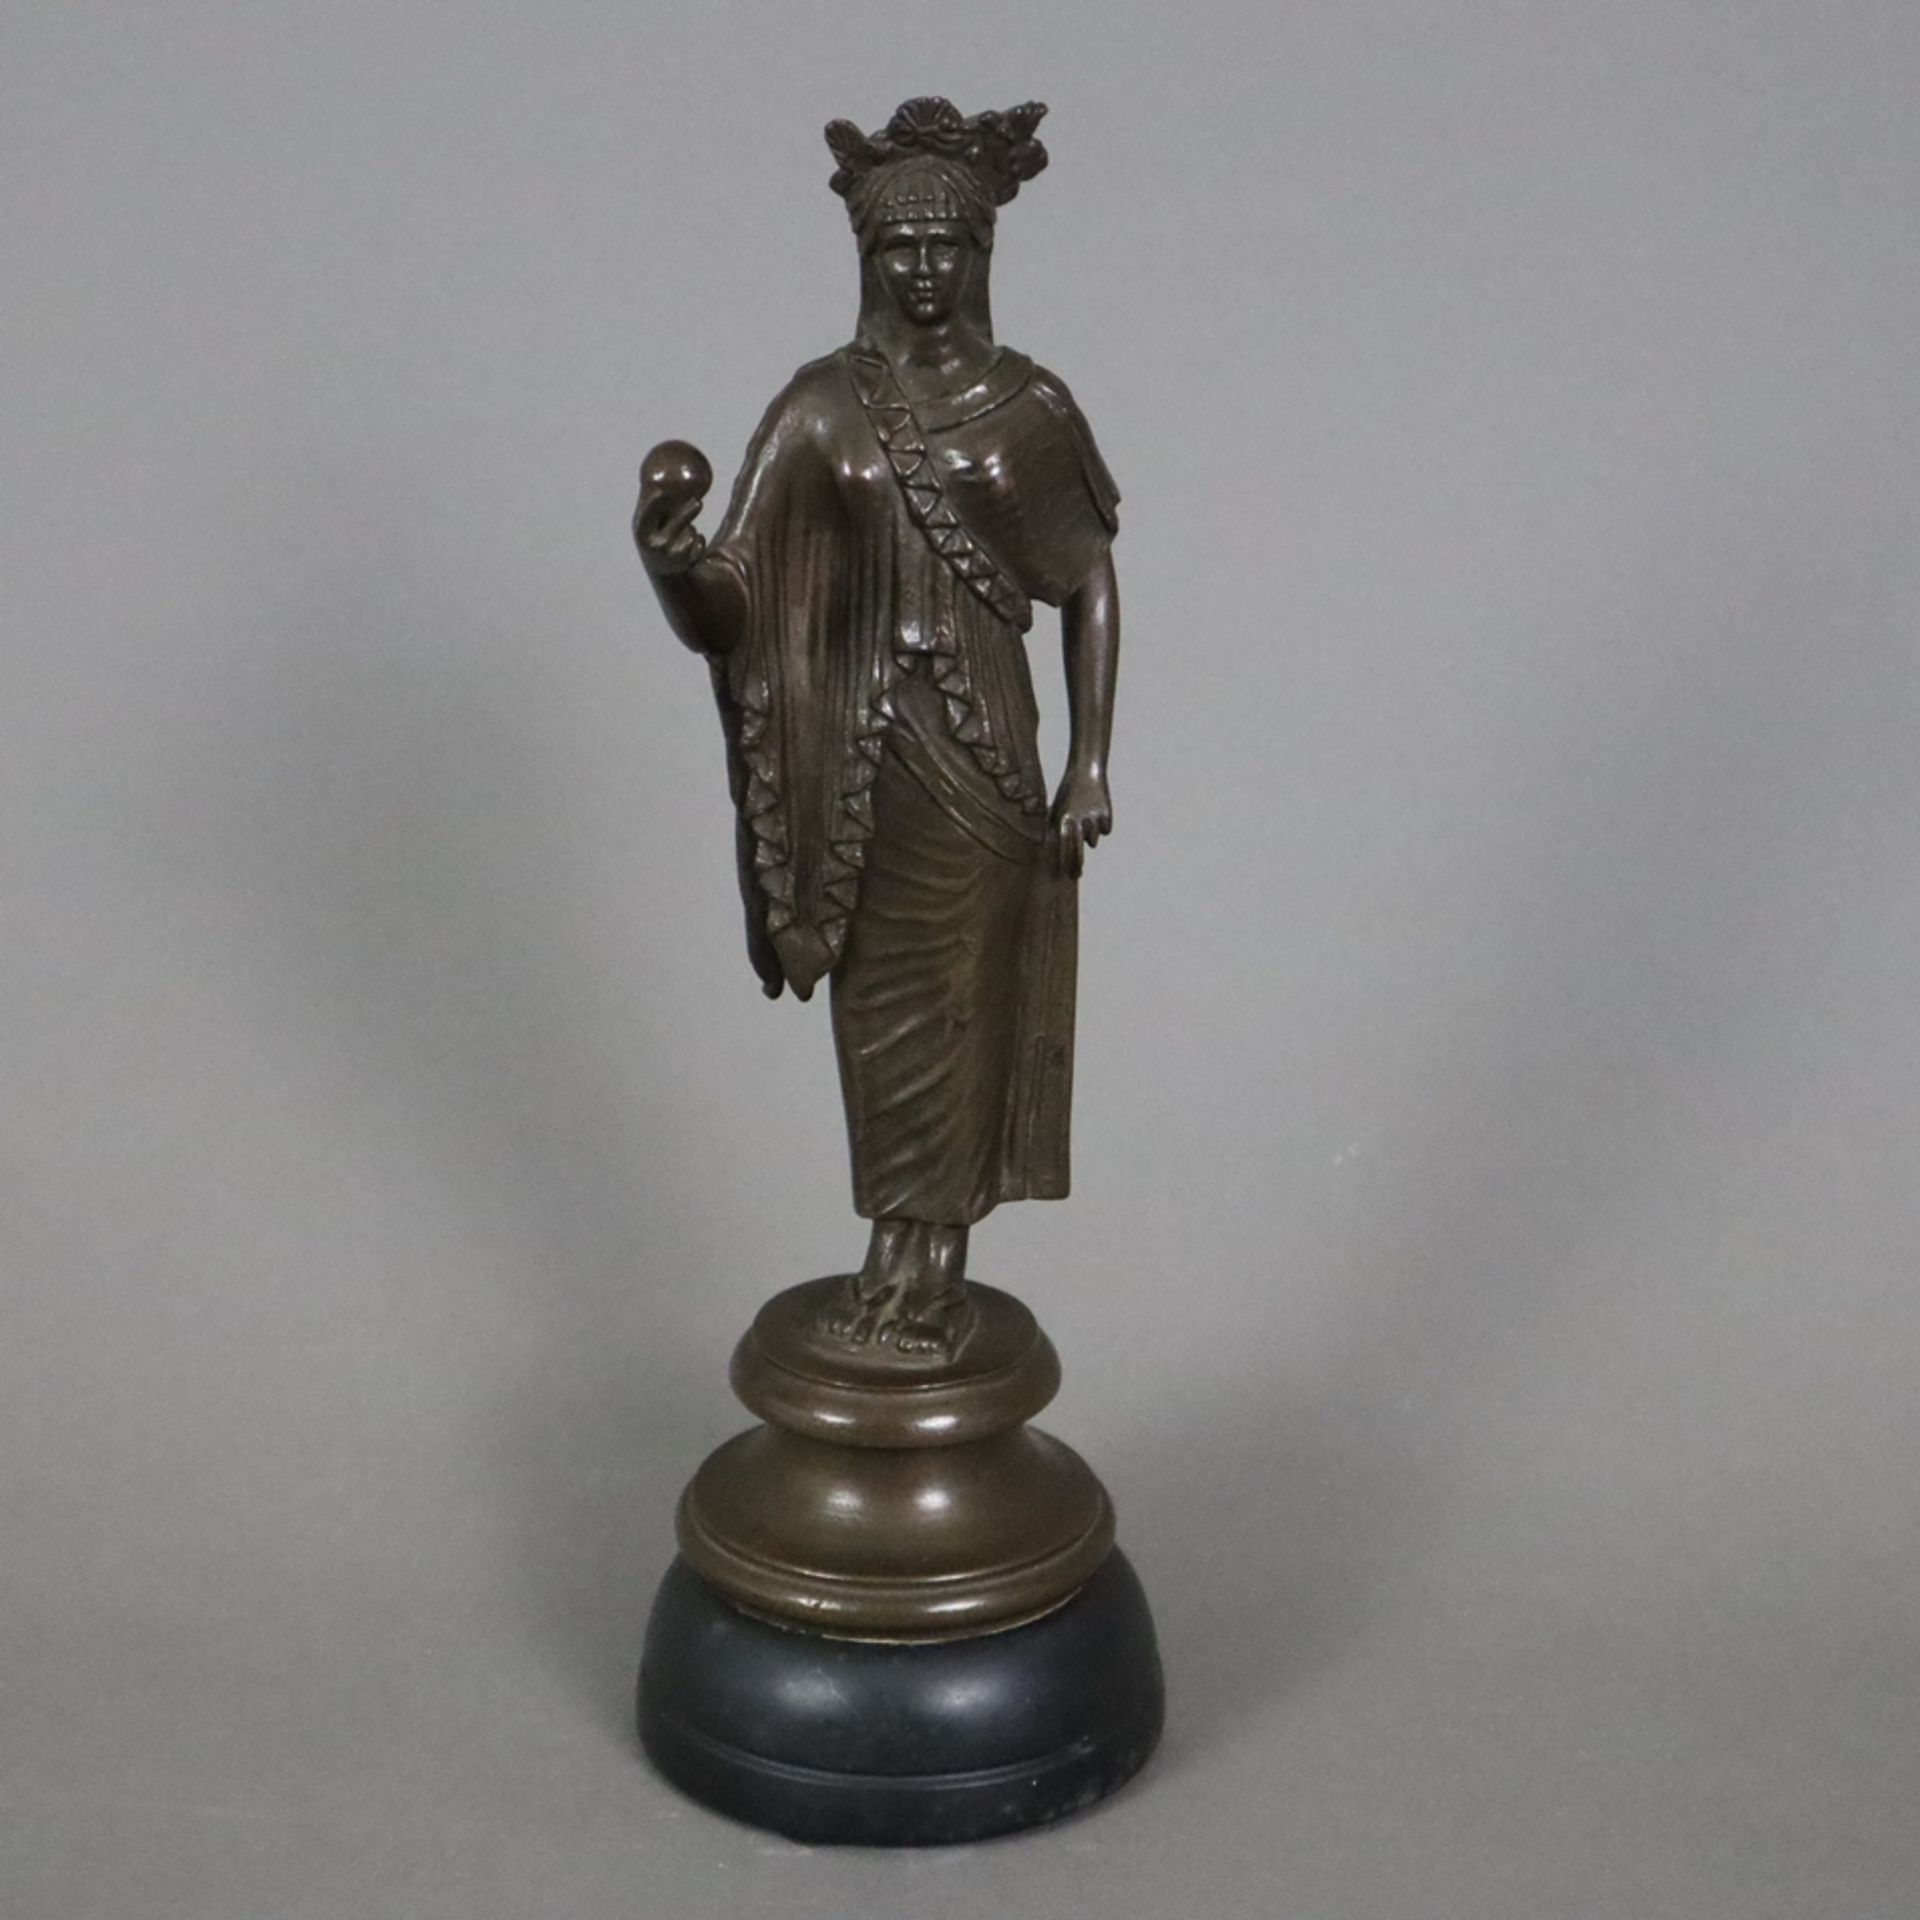 Figurine einer antiken Priesterin - Bronze, braun patiniert, antikisierende Frauenfigur mit Diadem,